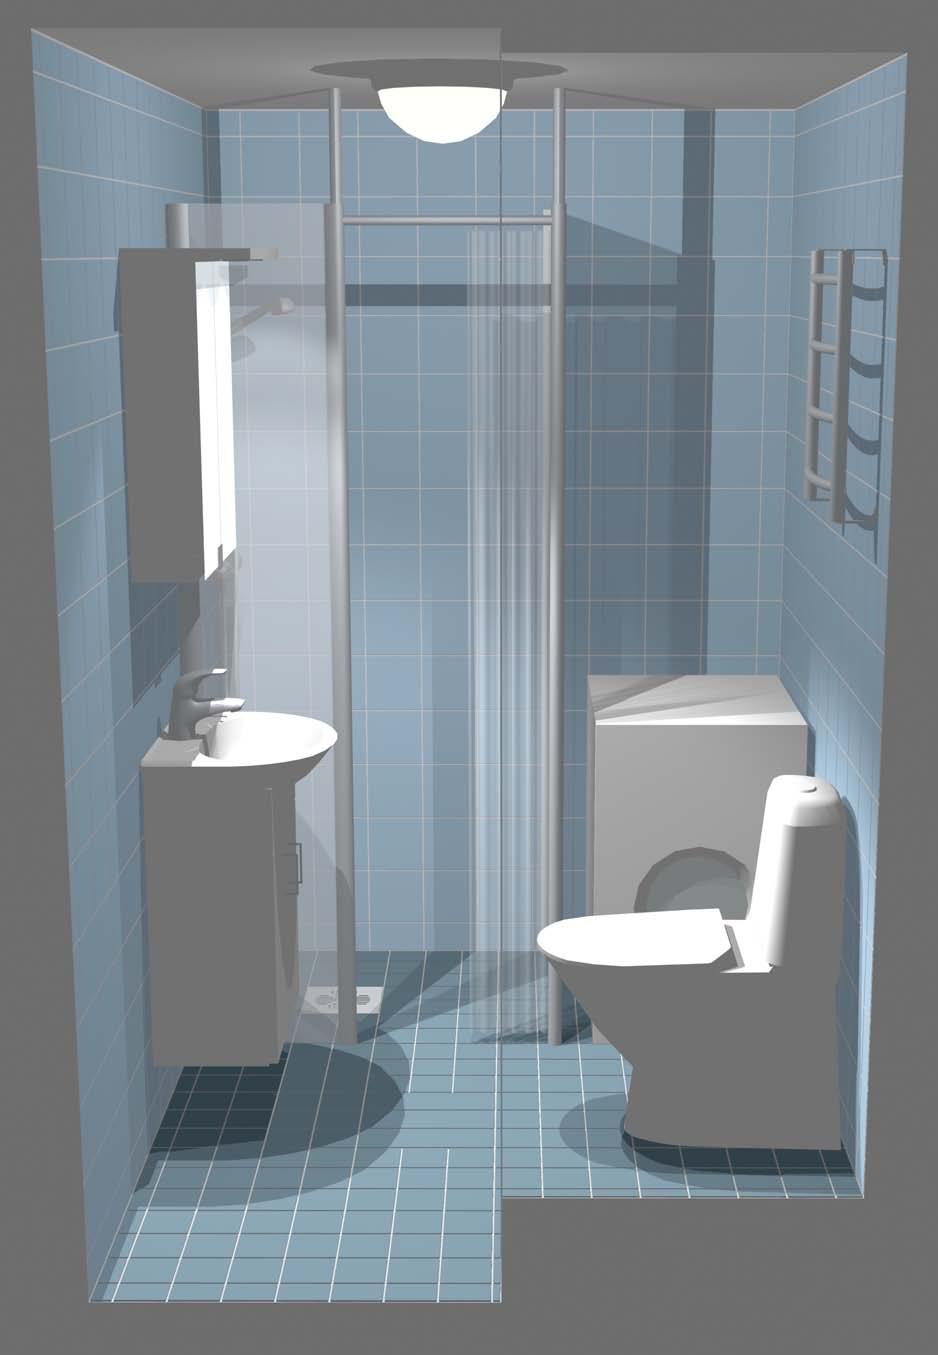 Kylpyhuone 2, vaihtoehto A, näkymä edestä päin ikkunattomassa